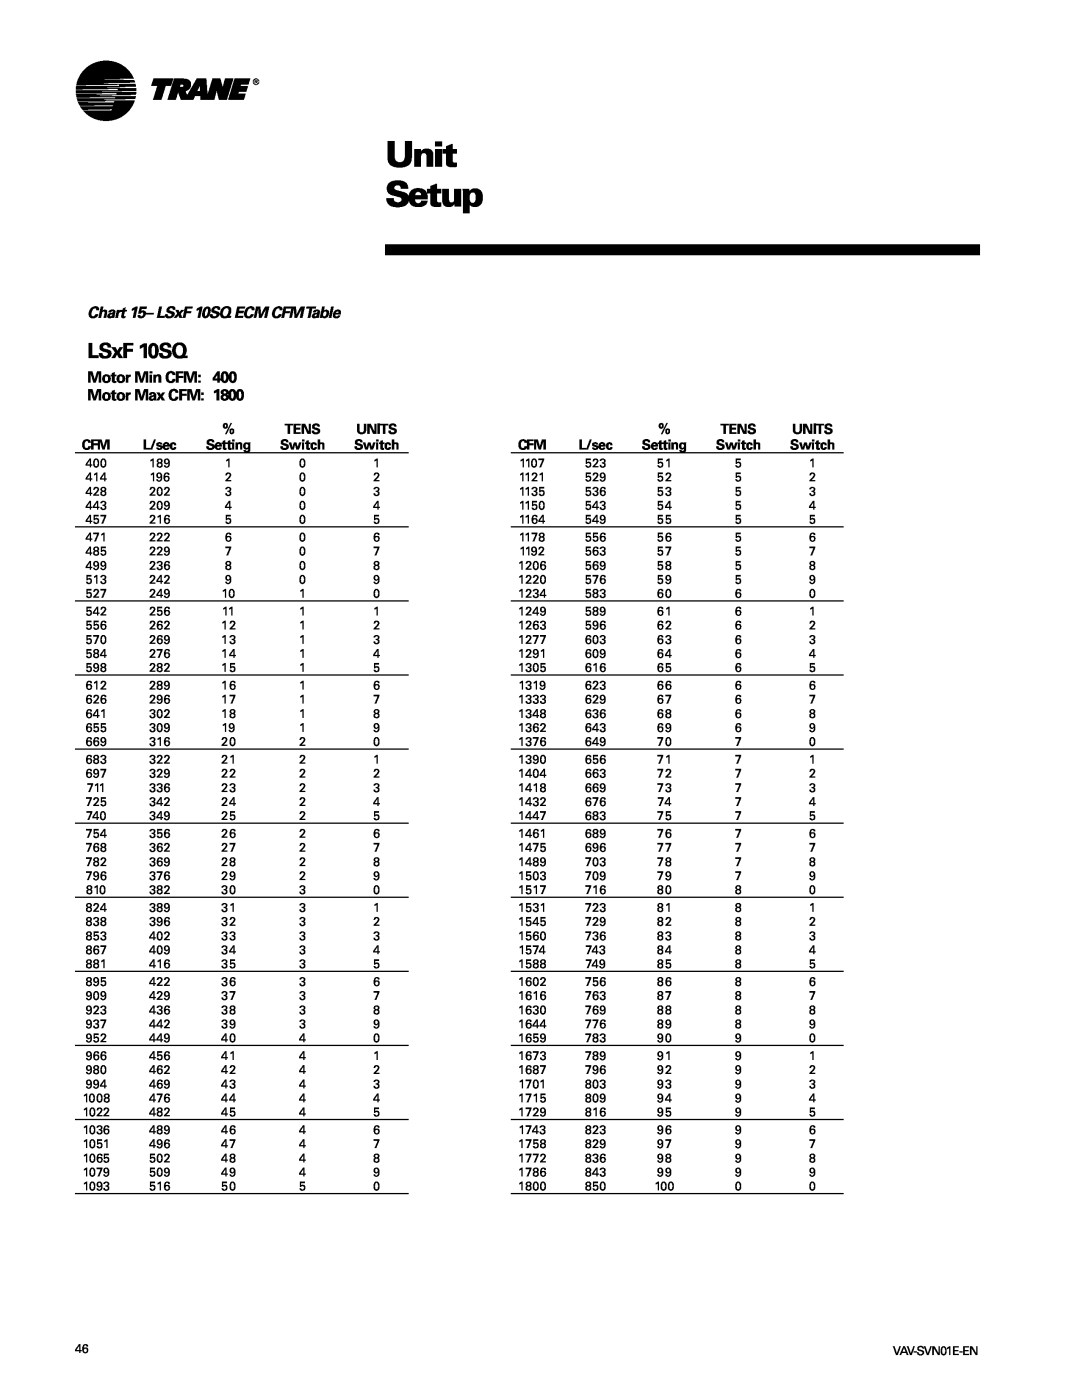 Trane VAV-SVN01E-EN, Trane manual Unit Setup, Chart 15- LSxF 10SQ ECM CFMTable, Tens, Units, Setting 